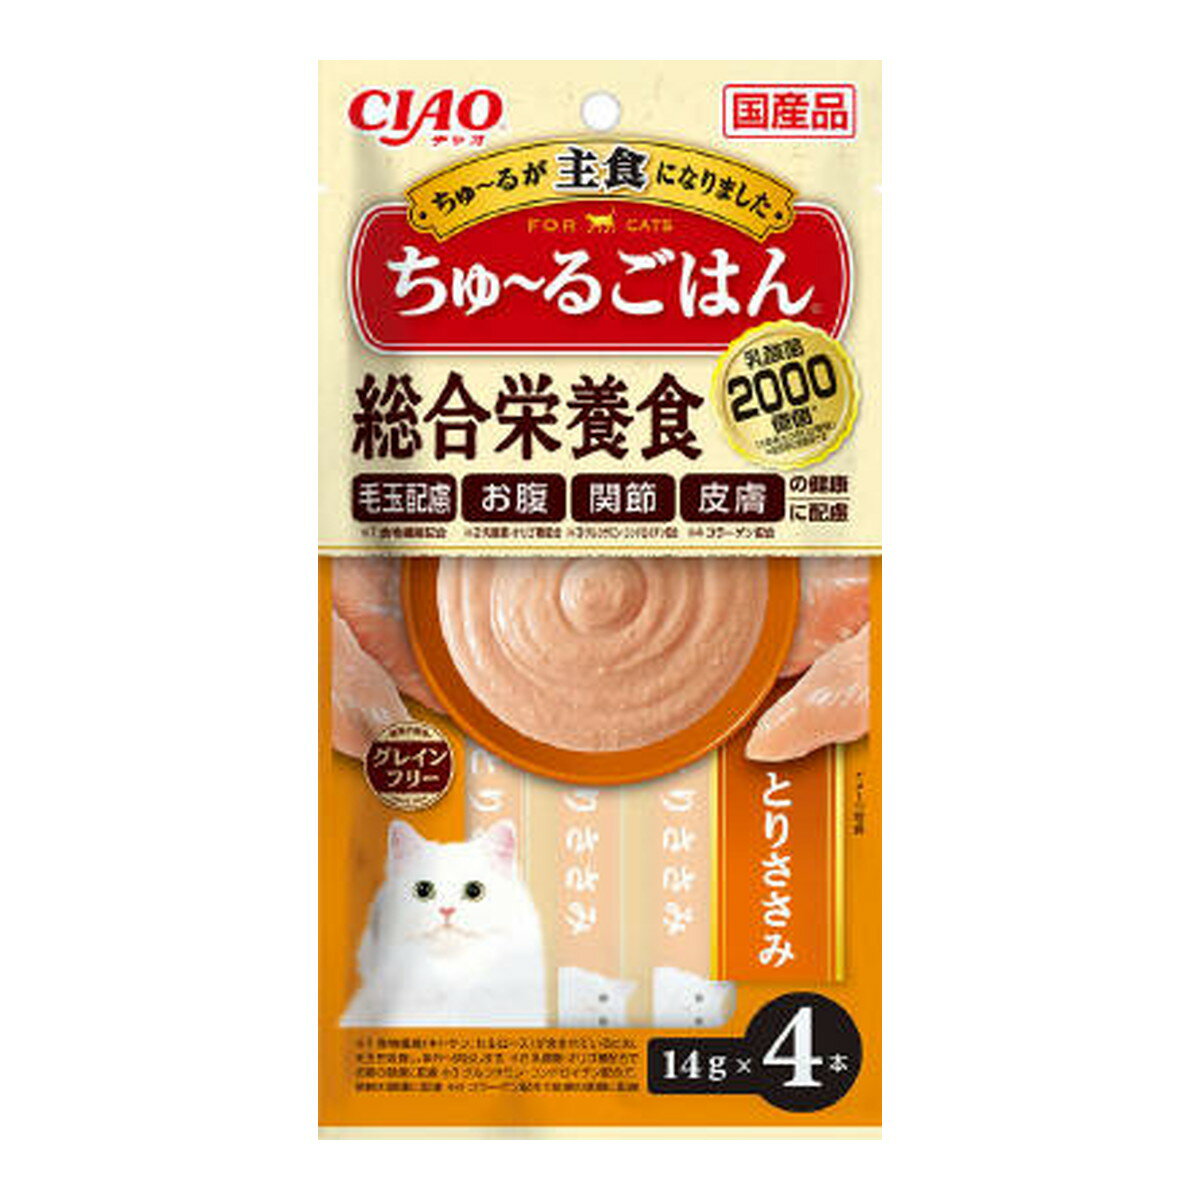 商品名：いなばペットフード チャオ CIAO ちゅーるごはん とりささみ 猫用 14g×4本入内容量：14g×4本JANコード：4901133458057発売元、製造元、輸入元又は販売元：いなばペットフード原産国：日本商品番号：101-4901133458057商品説明●猫ちゃんに必要な栄養素をバランスよく配合した総合栄養食です●健康維持に配慮した素材を配合。広告文責：アットライフ株式会社TEL 050-3196-1510 ※商品パッケージは変更の場合あり。メーカー欠品または完売の際、キャンセルをお願いすることがあります。ご了承ください。